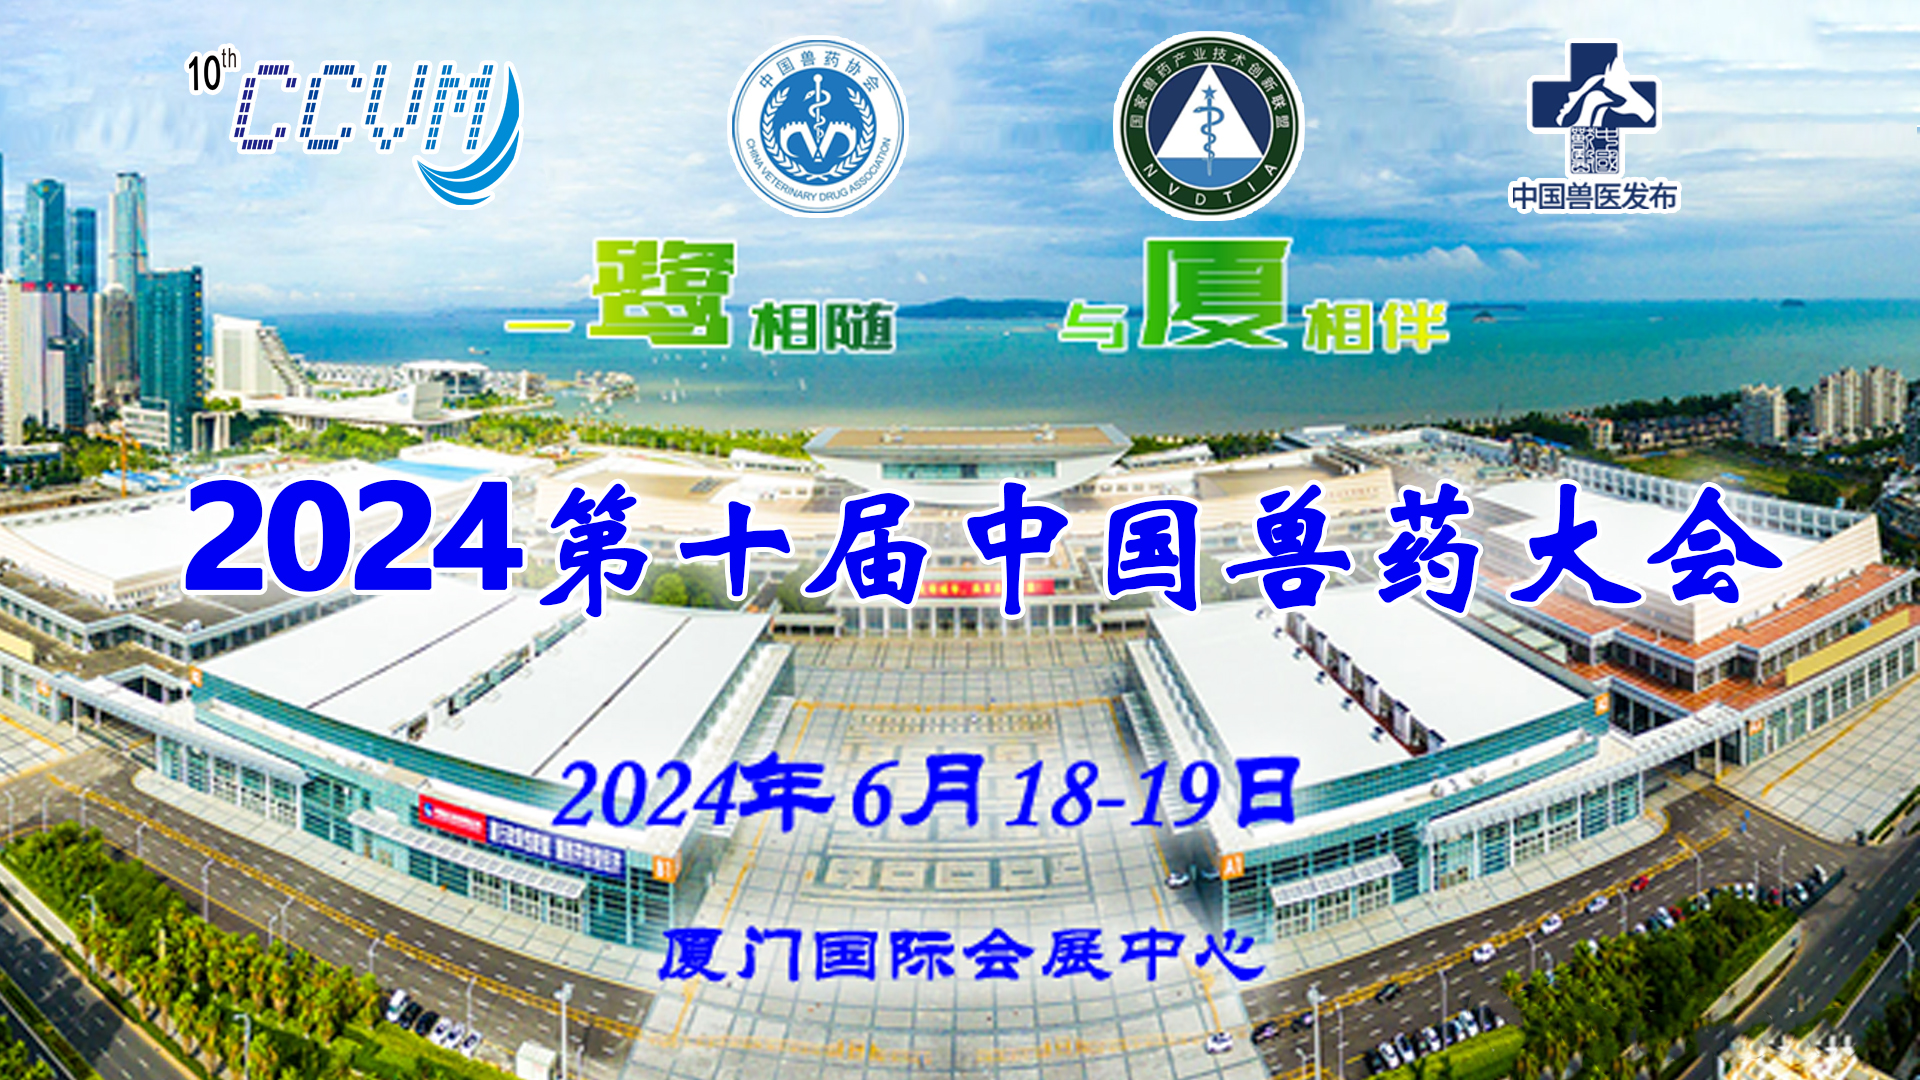 关于举办第十届中国兽药展览会的通知